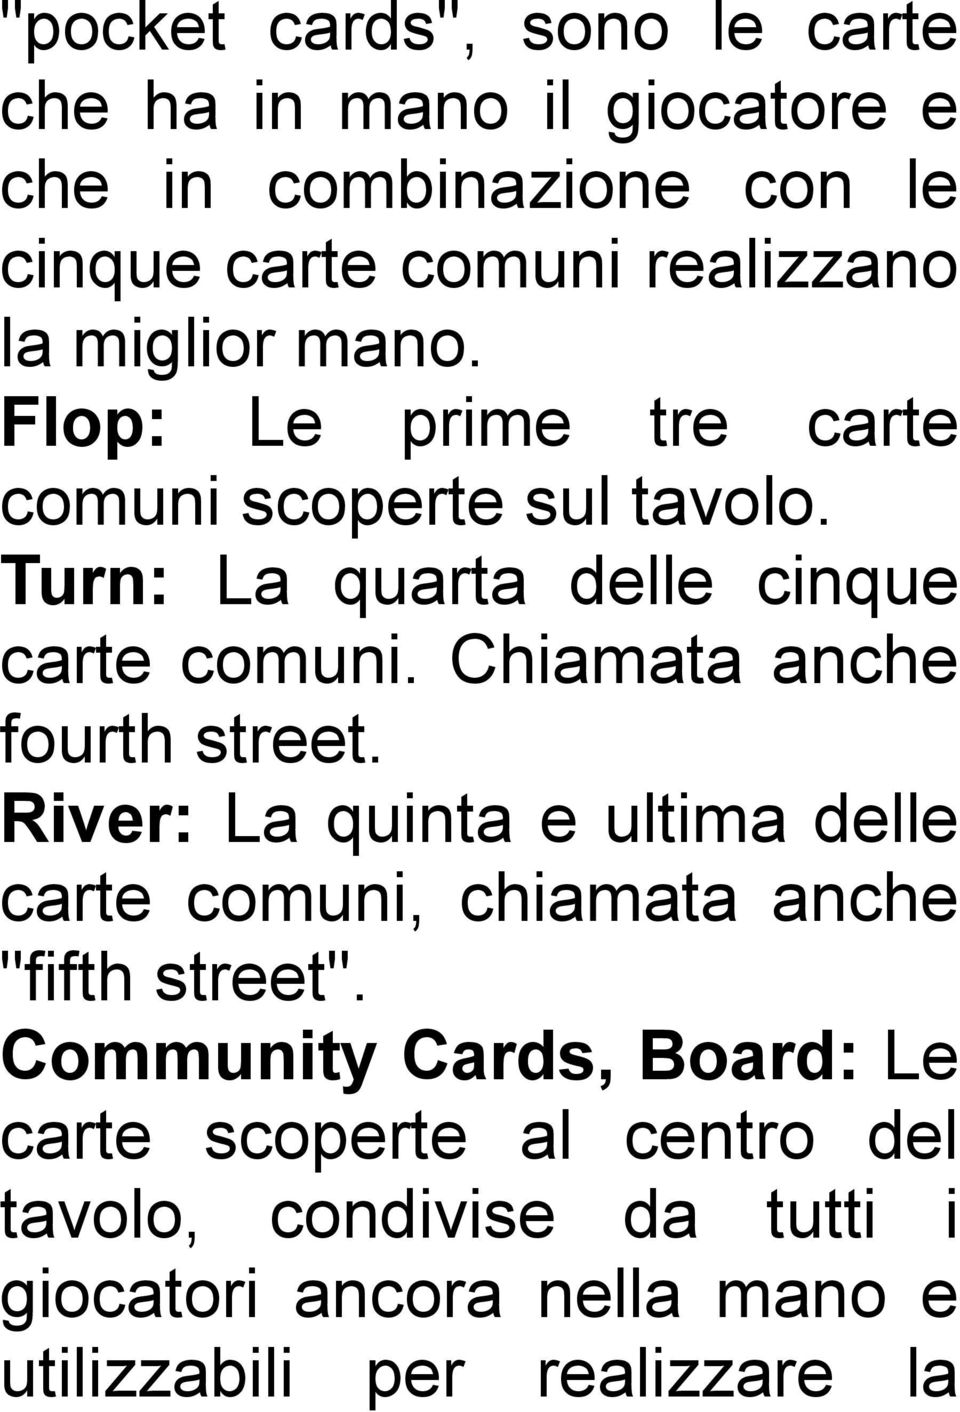 Chiamata anche fourth street. River: La quinta e ultima delle carte comuni, chiamata anche "fifth street".